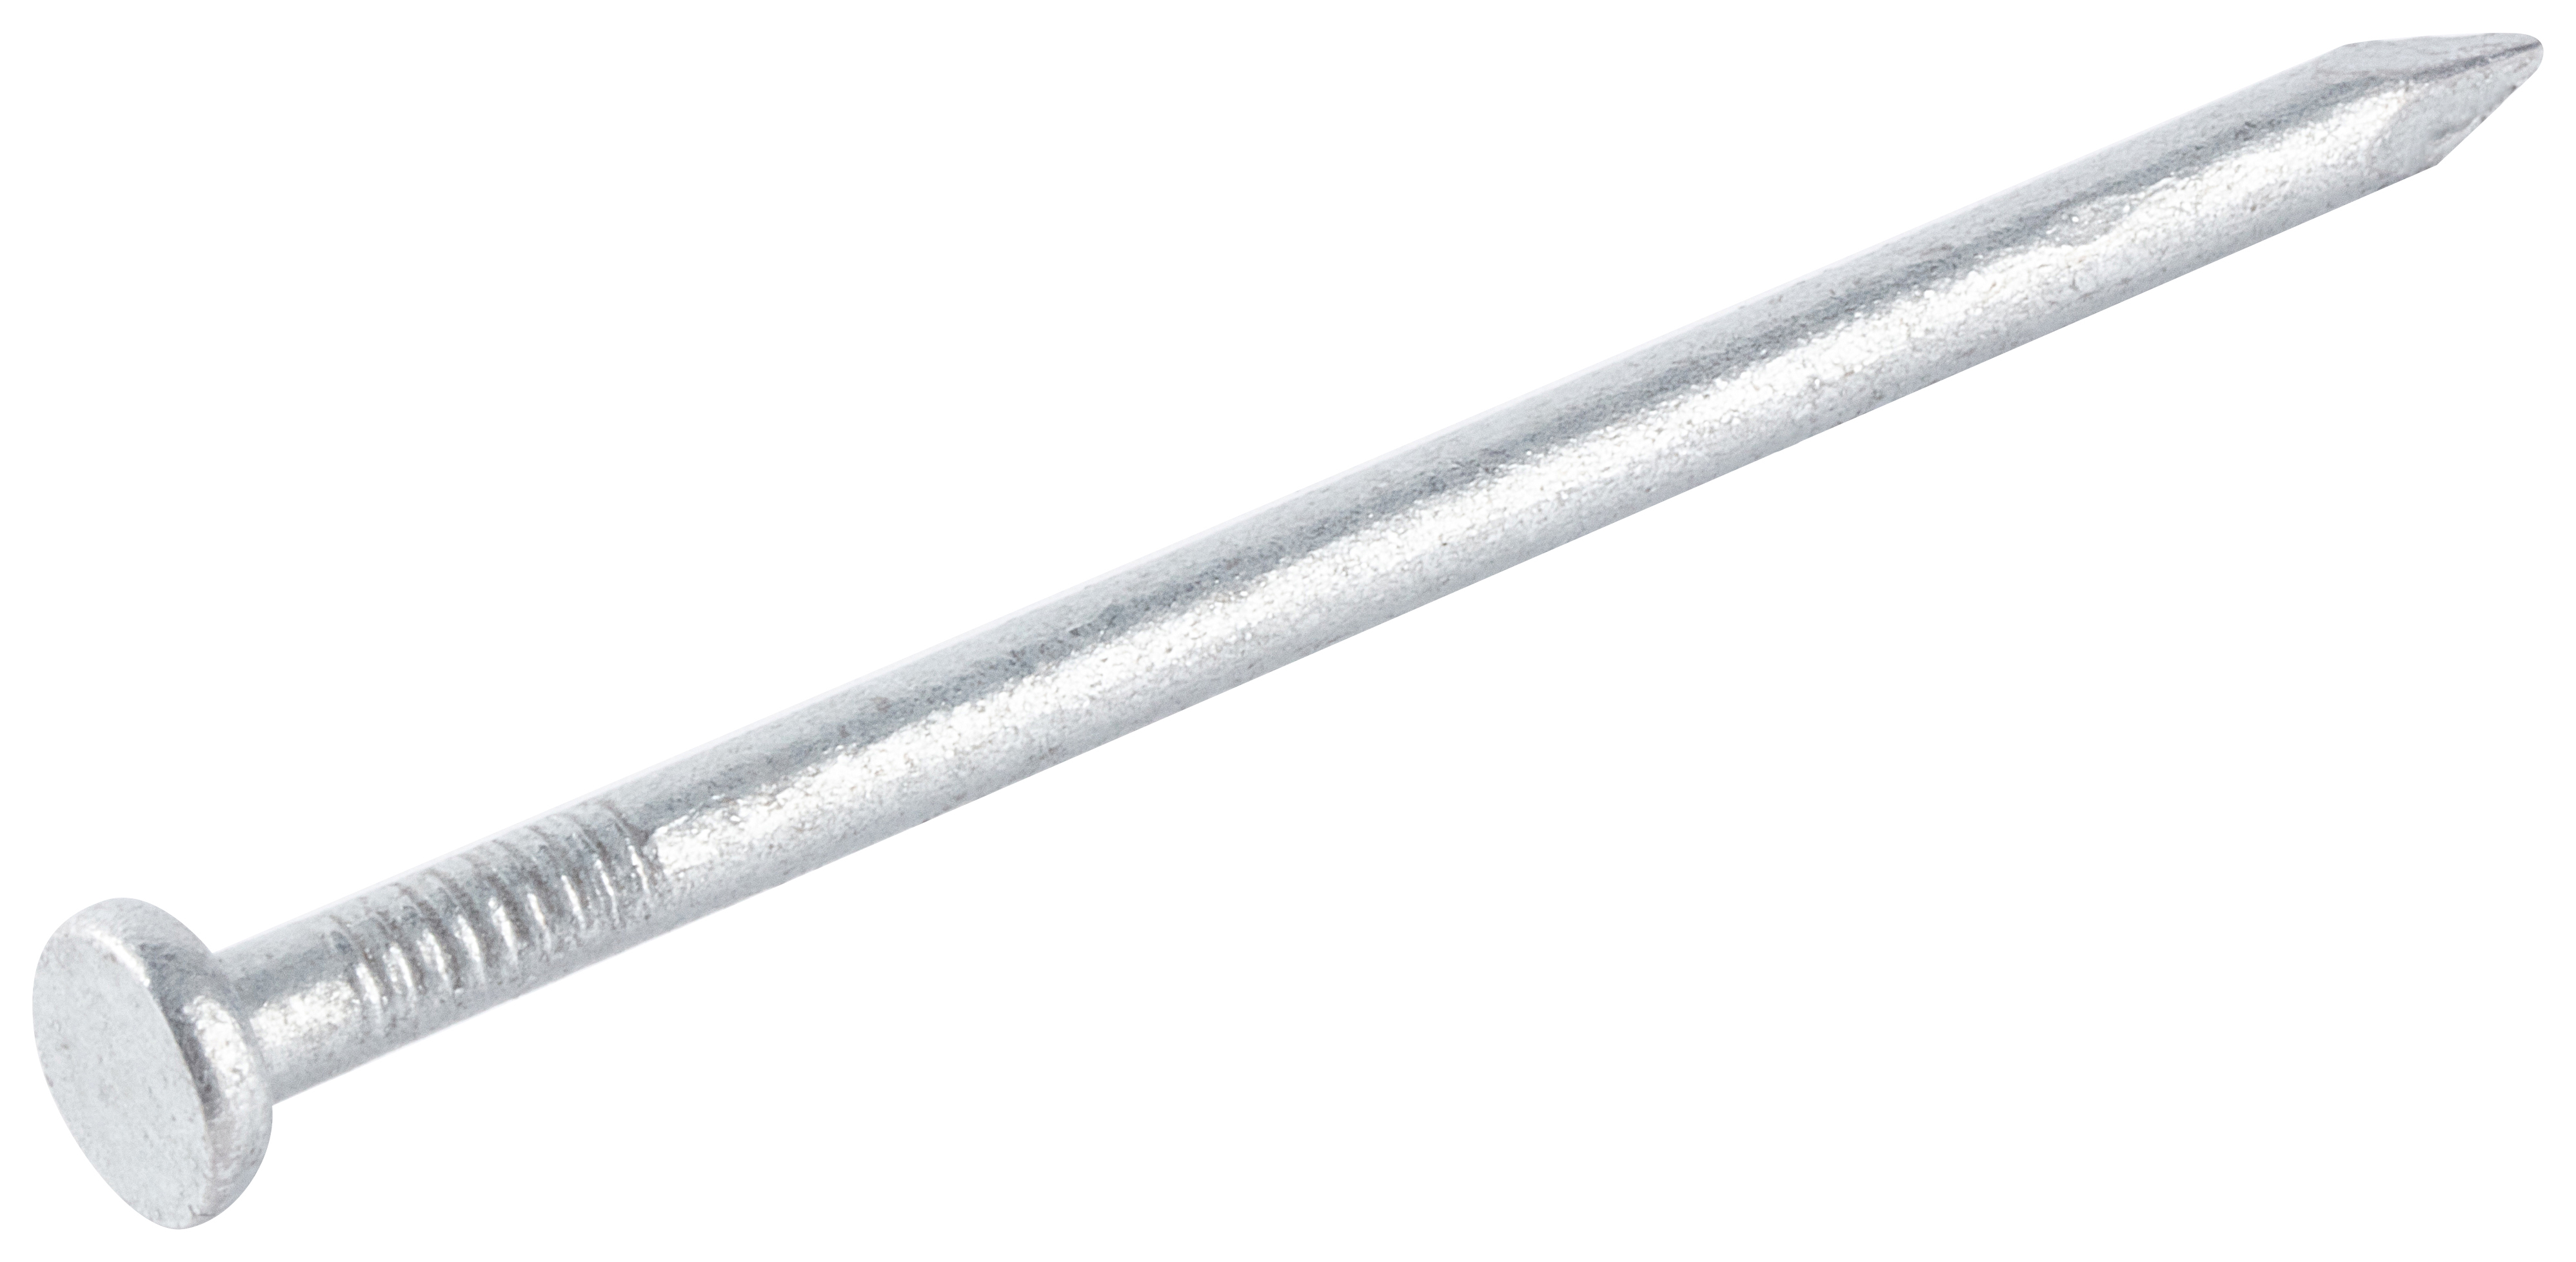 Galvanised Round Wire Nails - 75 x 3.75mm - 500g